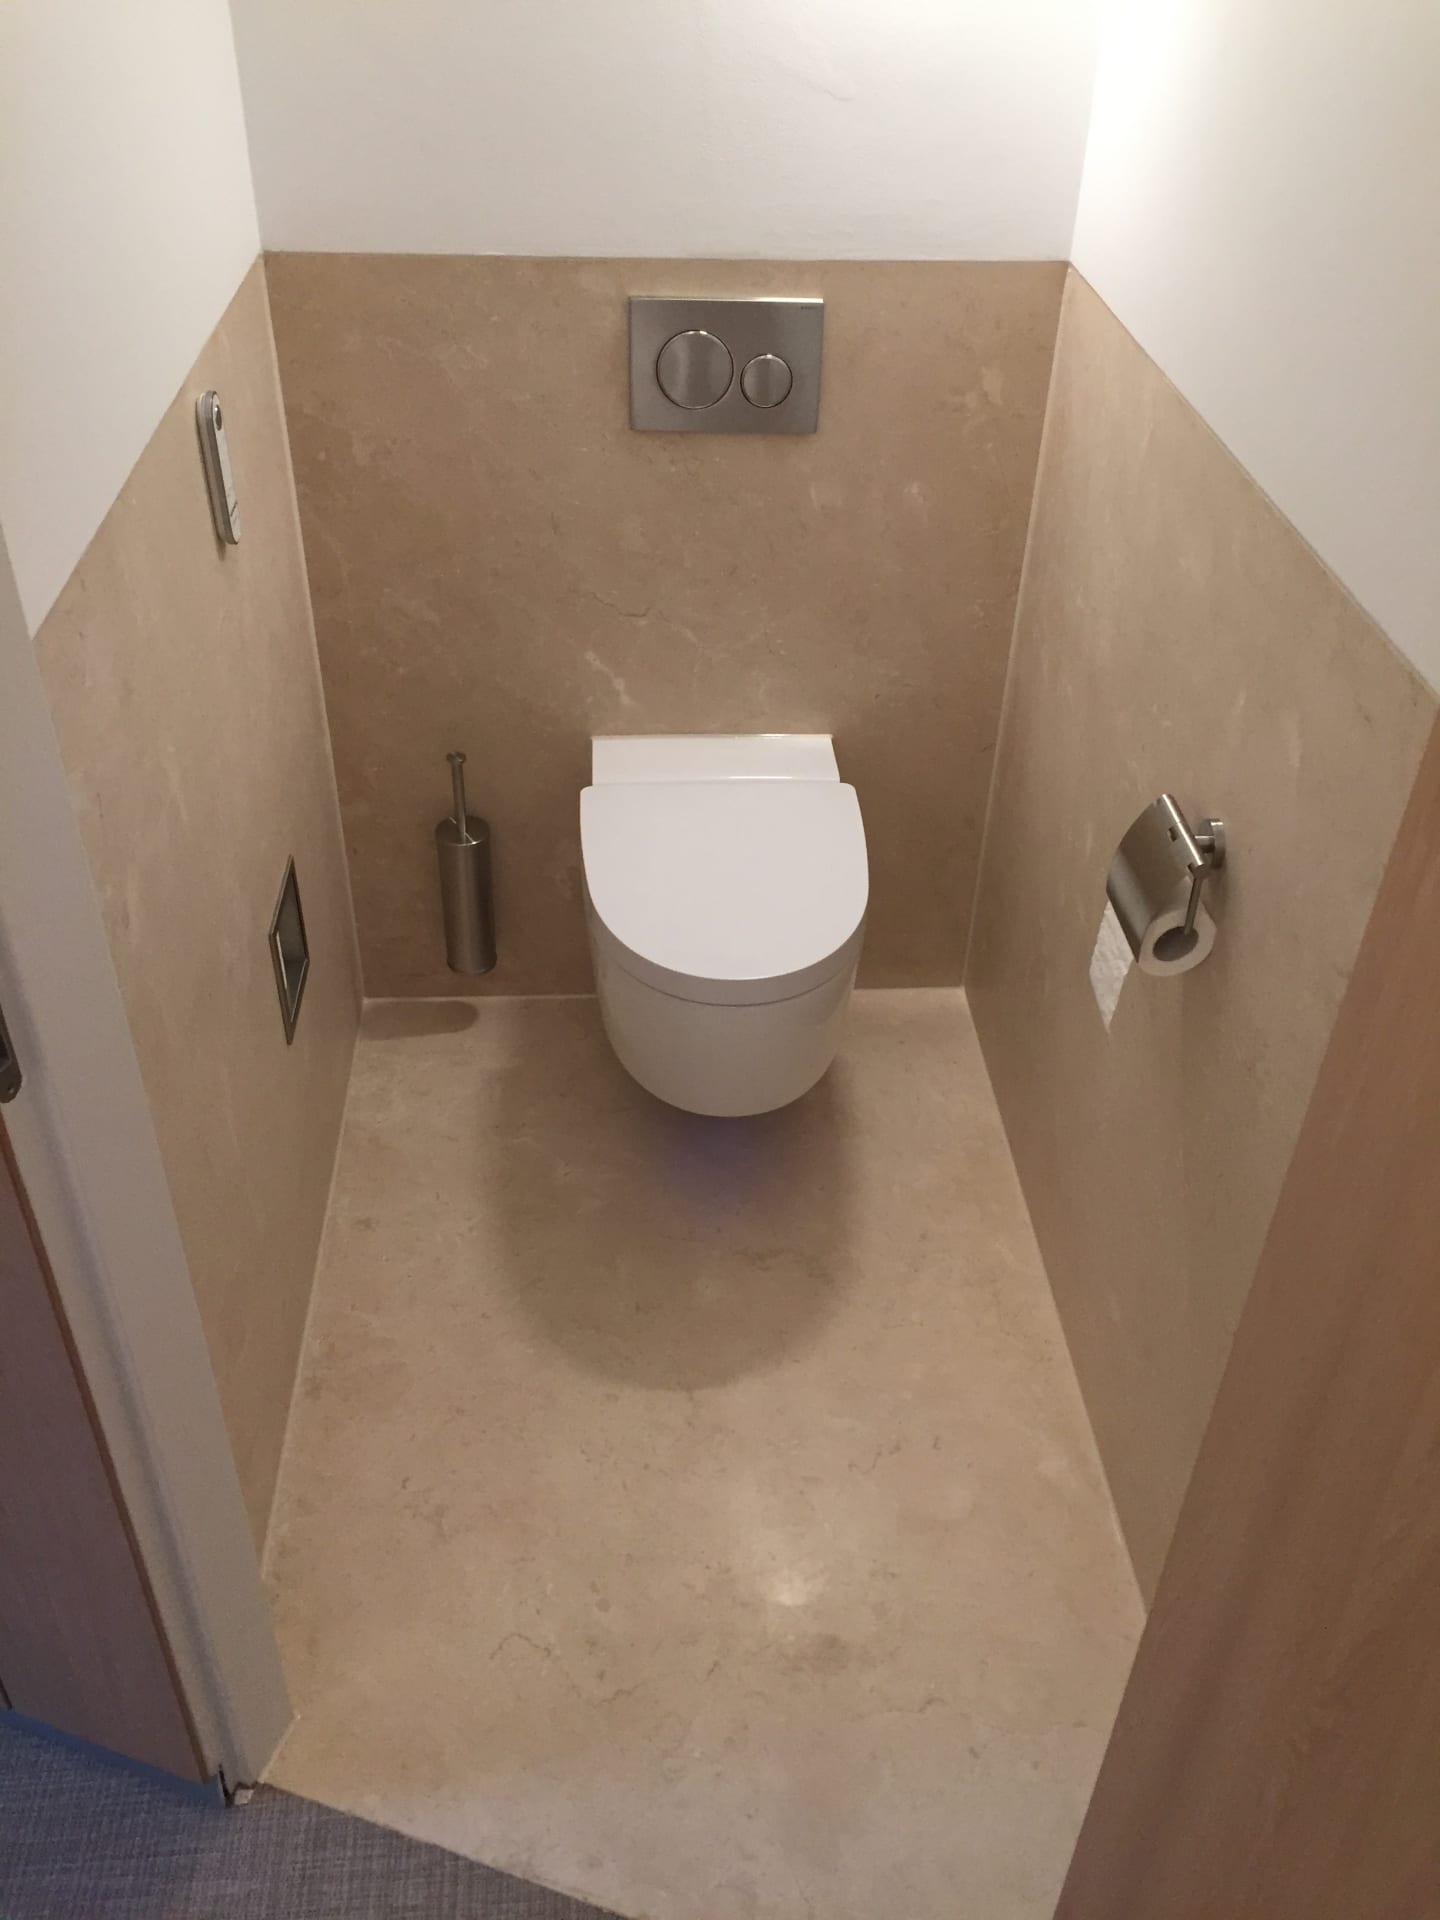 EERNEWOUDE – Badkamer en toilet in Crema Marfil